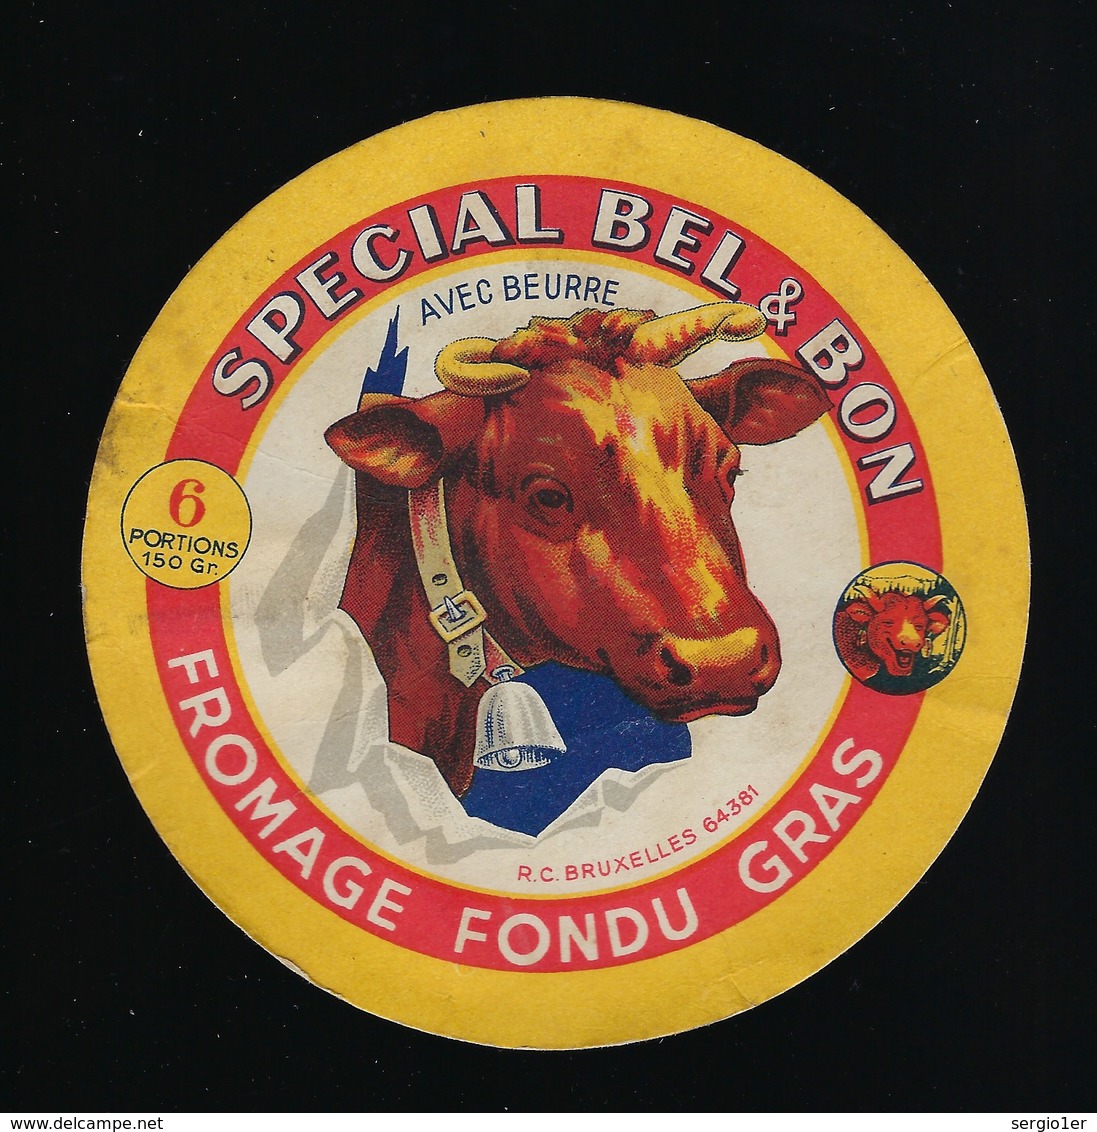 Ancienne Etiquette Fromage Fondu Gras Avec Beurre  6 Portions  Spécial Bel & Bon La Vache Qui Rit - Fromage